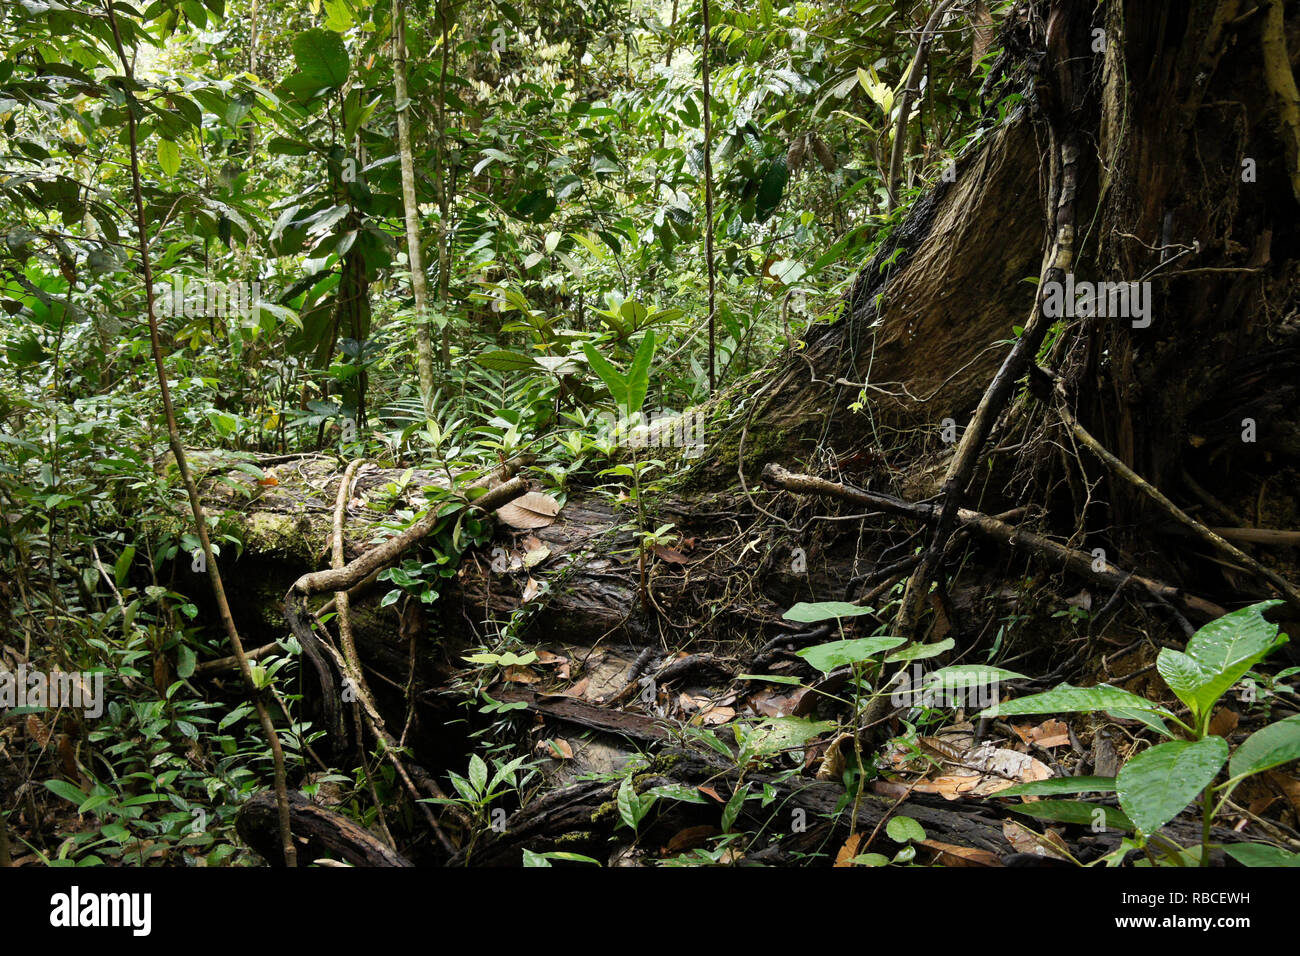 Vegetación en bosques de tierras bajas tropicales, Sarawak (Borneo), Malasia Foto de stock